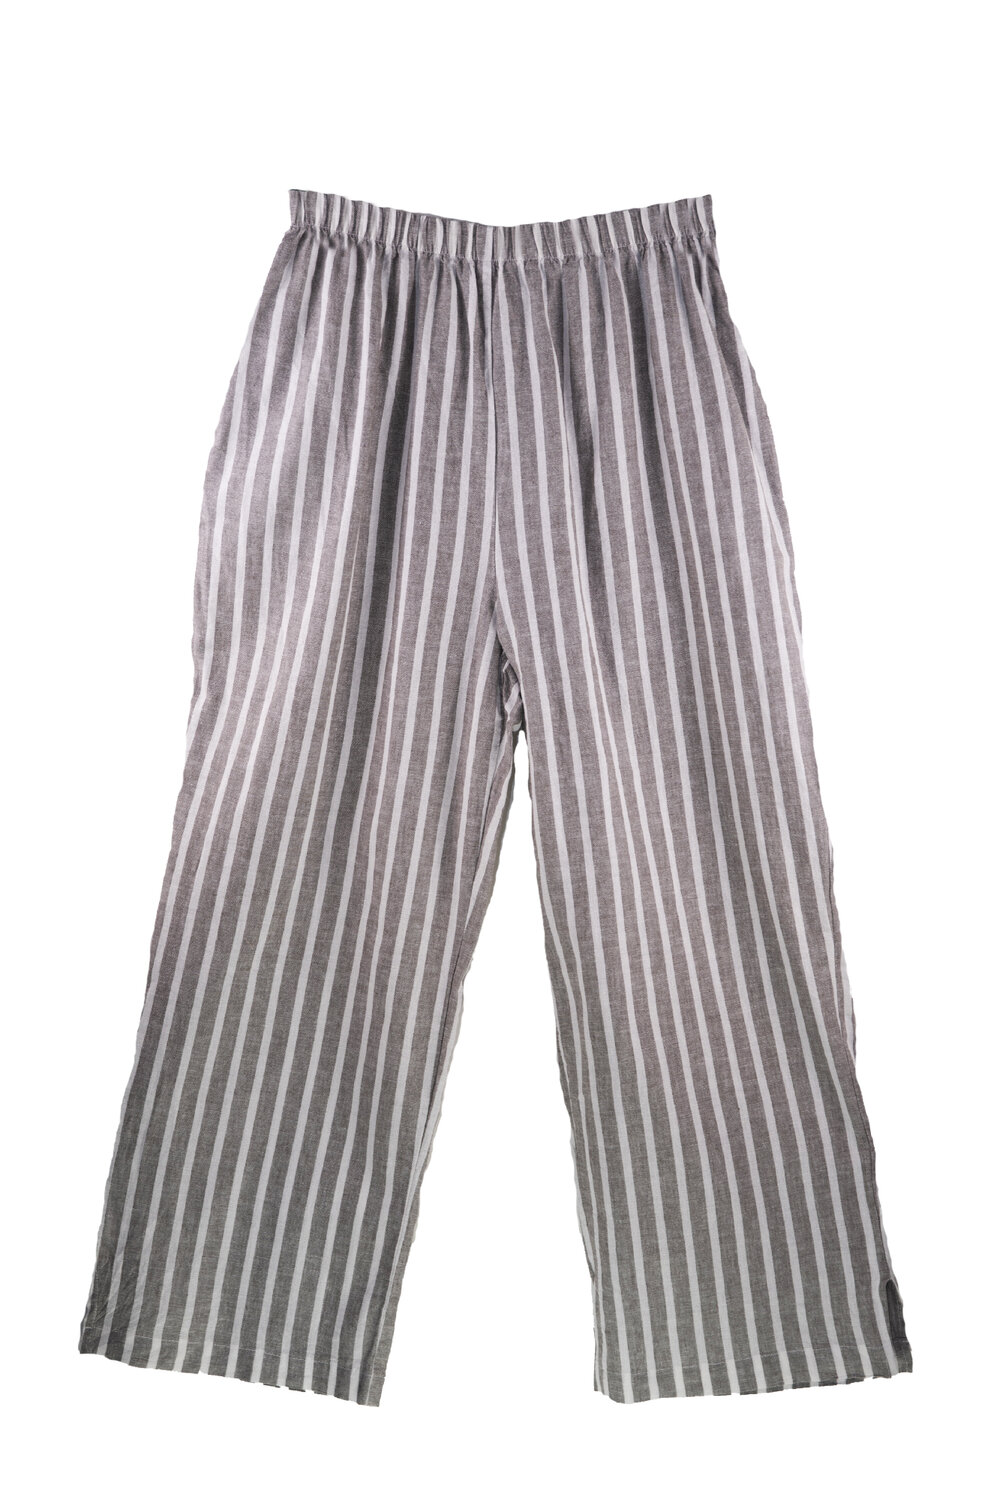 Striped Linen Pants in Dark Heather Grey — LeParisPetit by I love linen